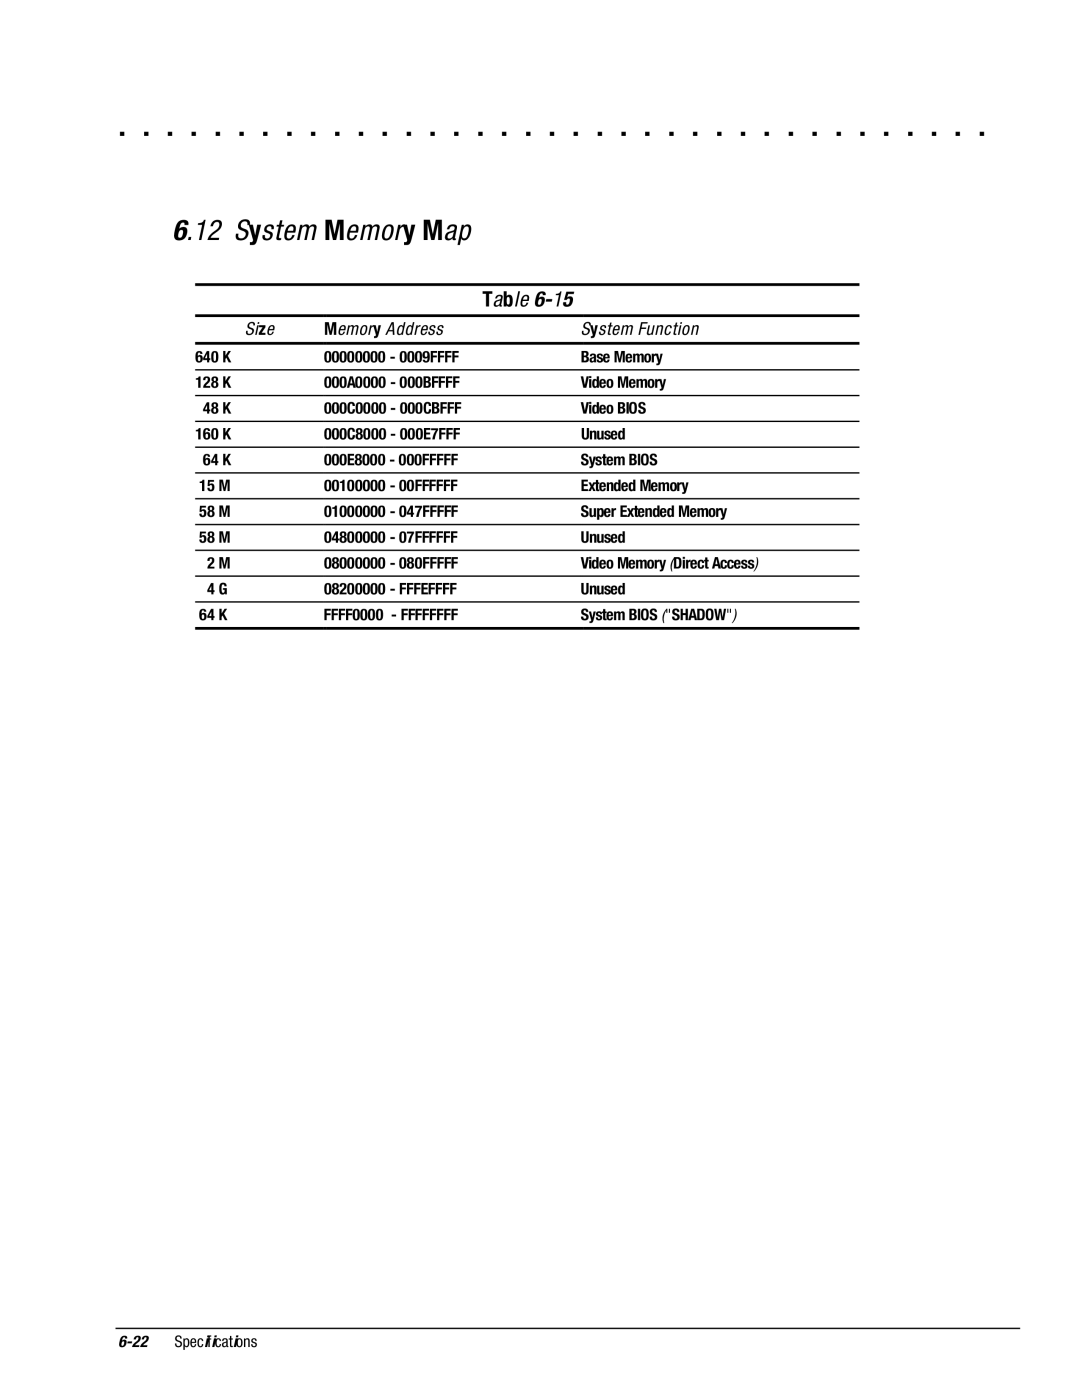 Compaq 4125D, 4130T, 4150T, 4140T, 4131T, 4200, 4125T, 4160T SLIMLINE, 4115, 4120T, 4110D manual System Memory Map 